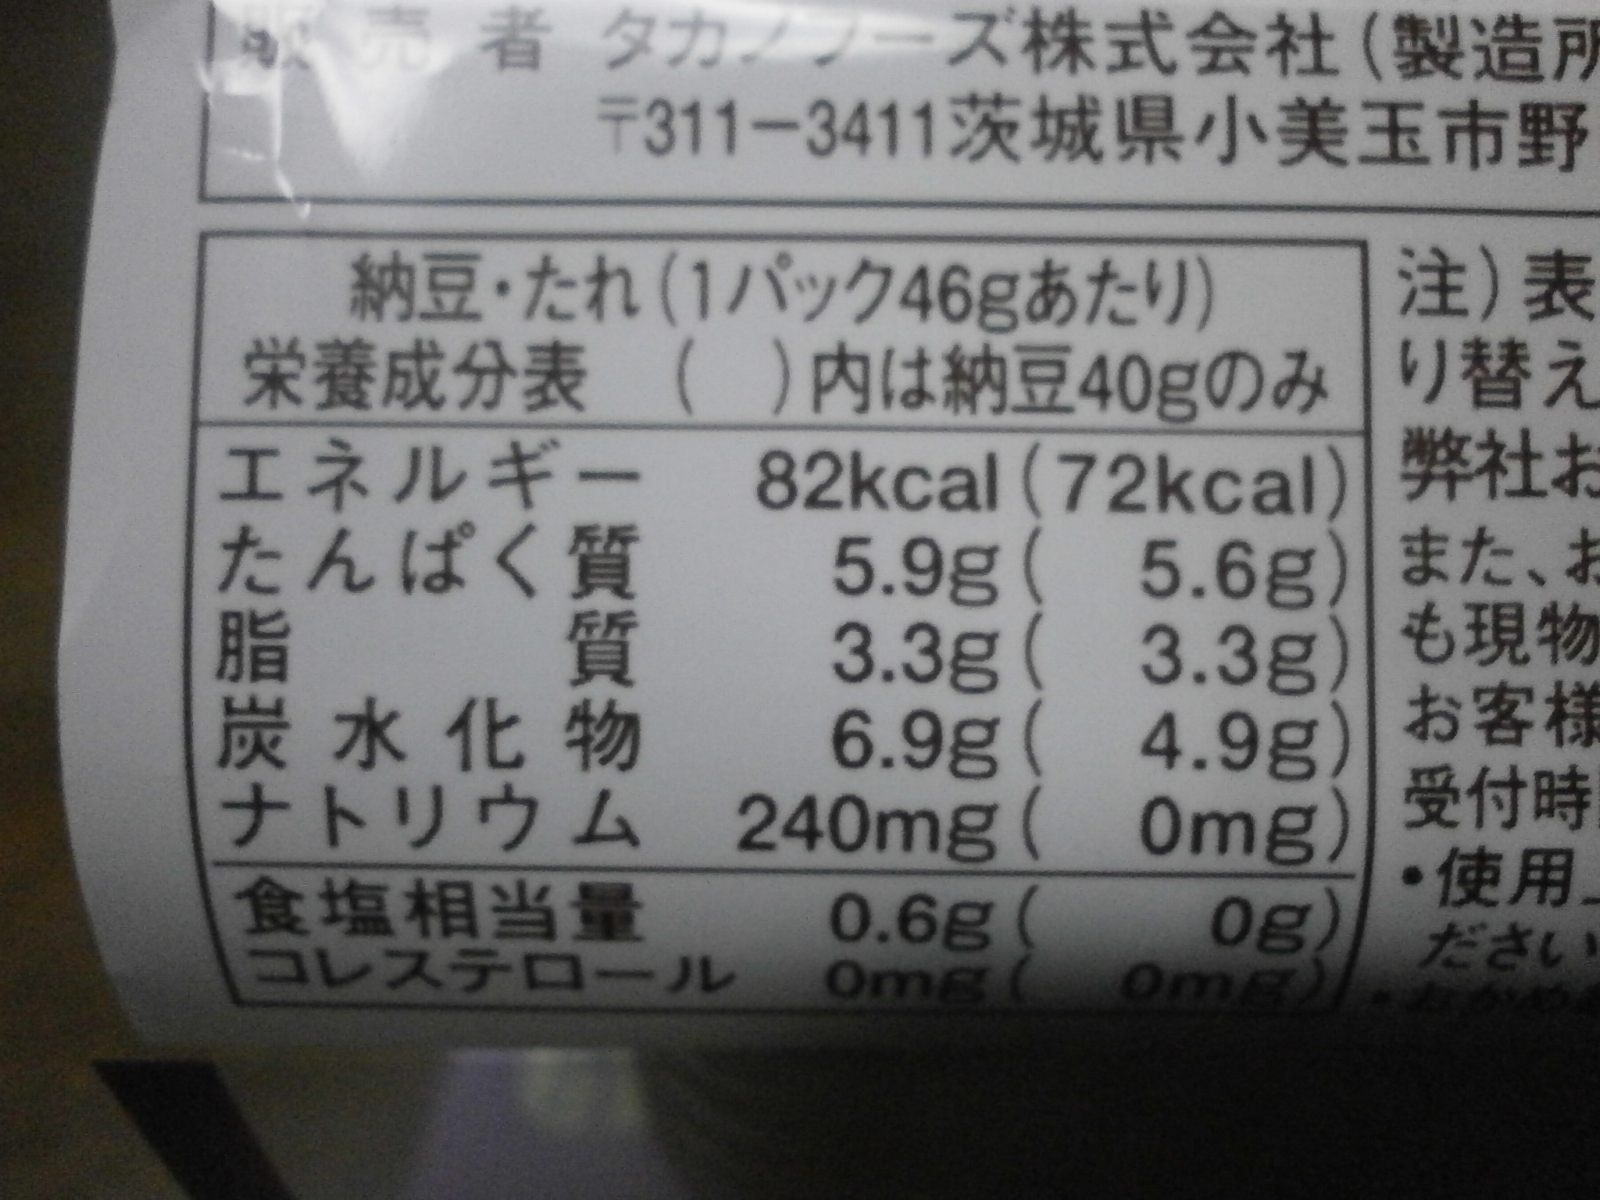 Algues Shiso natto (soja fermenté Okame)